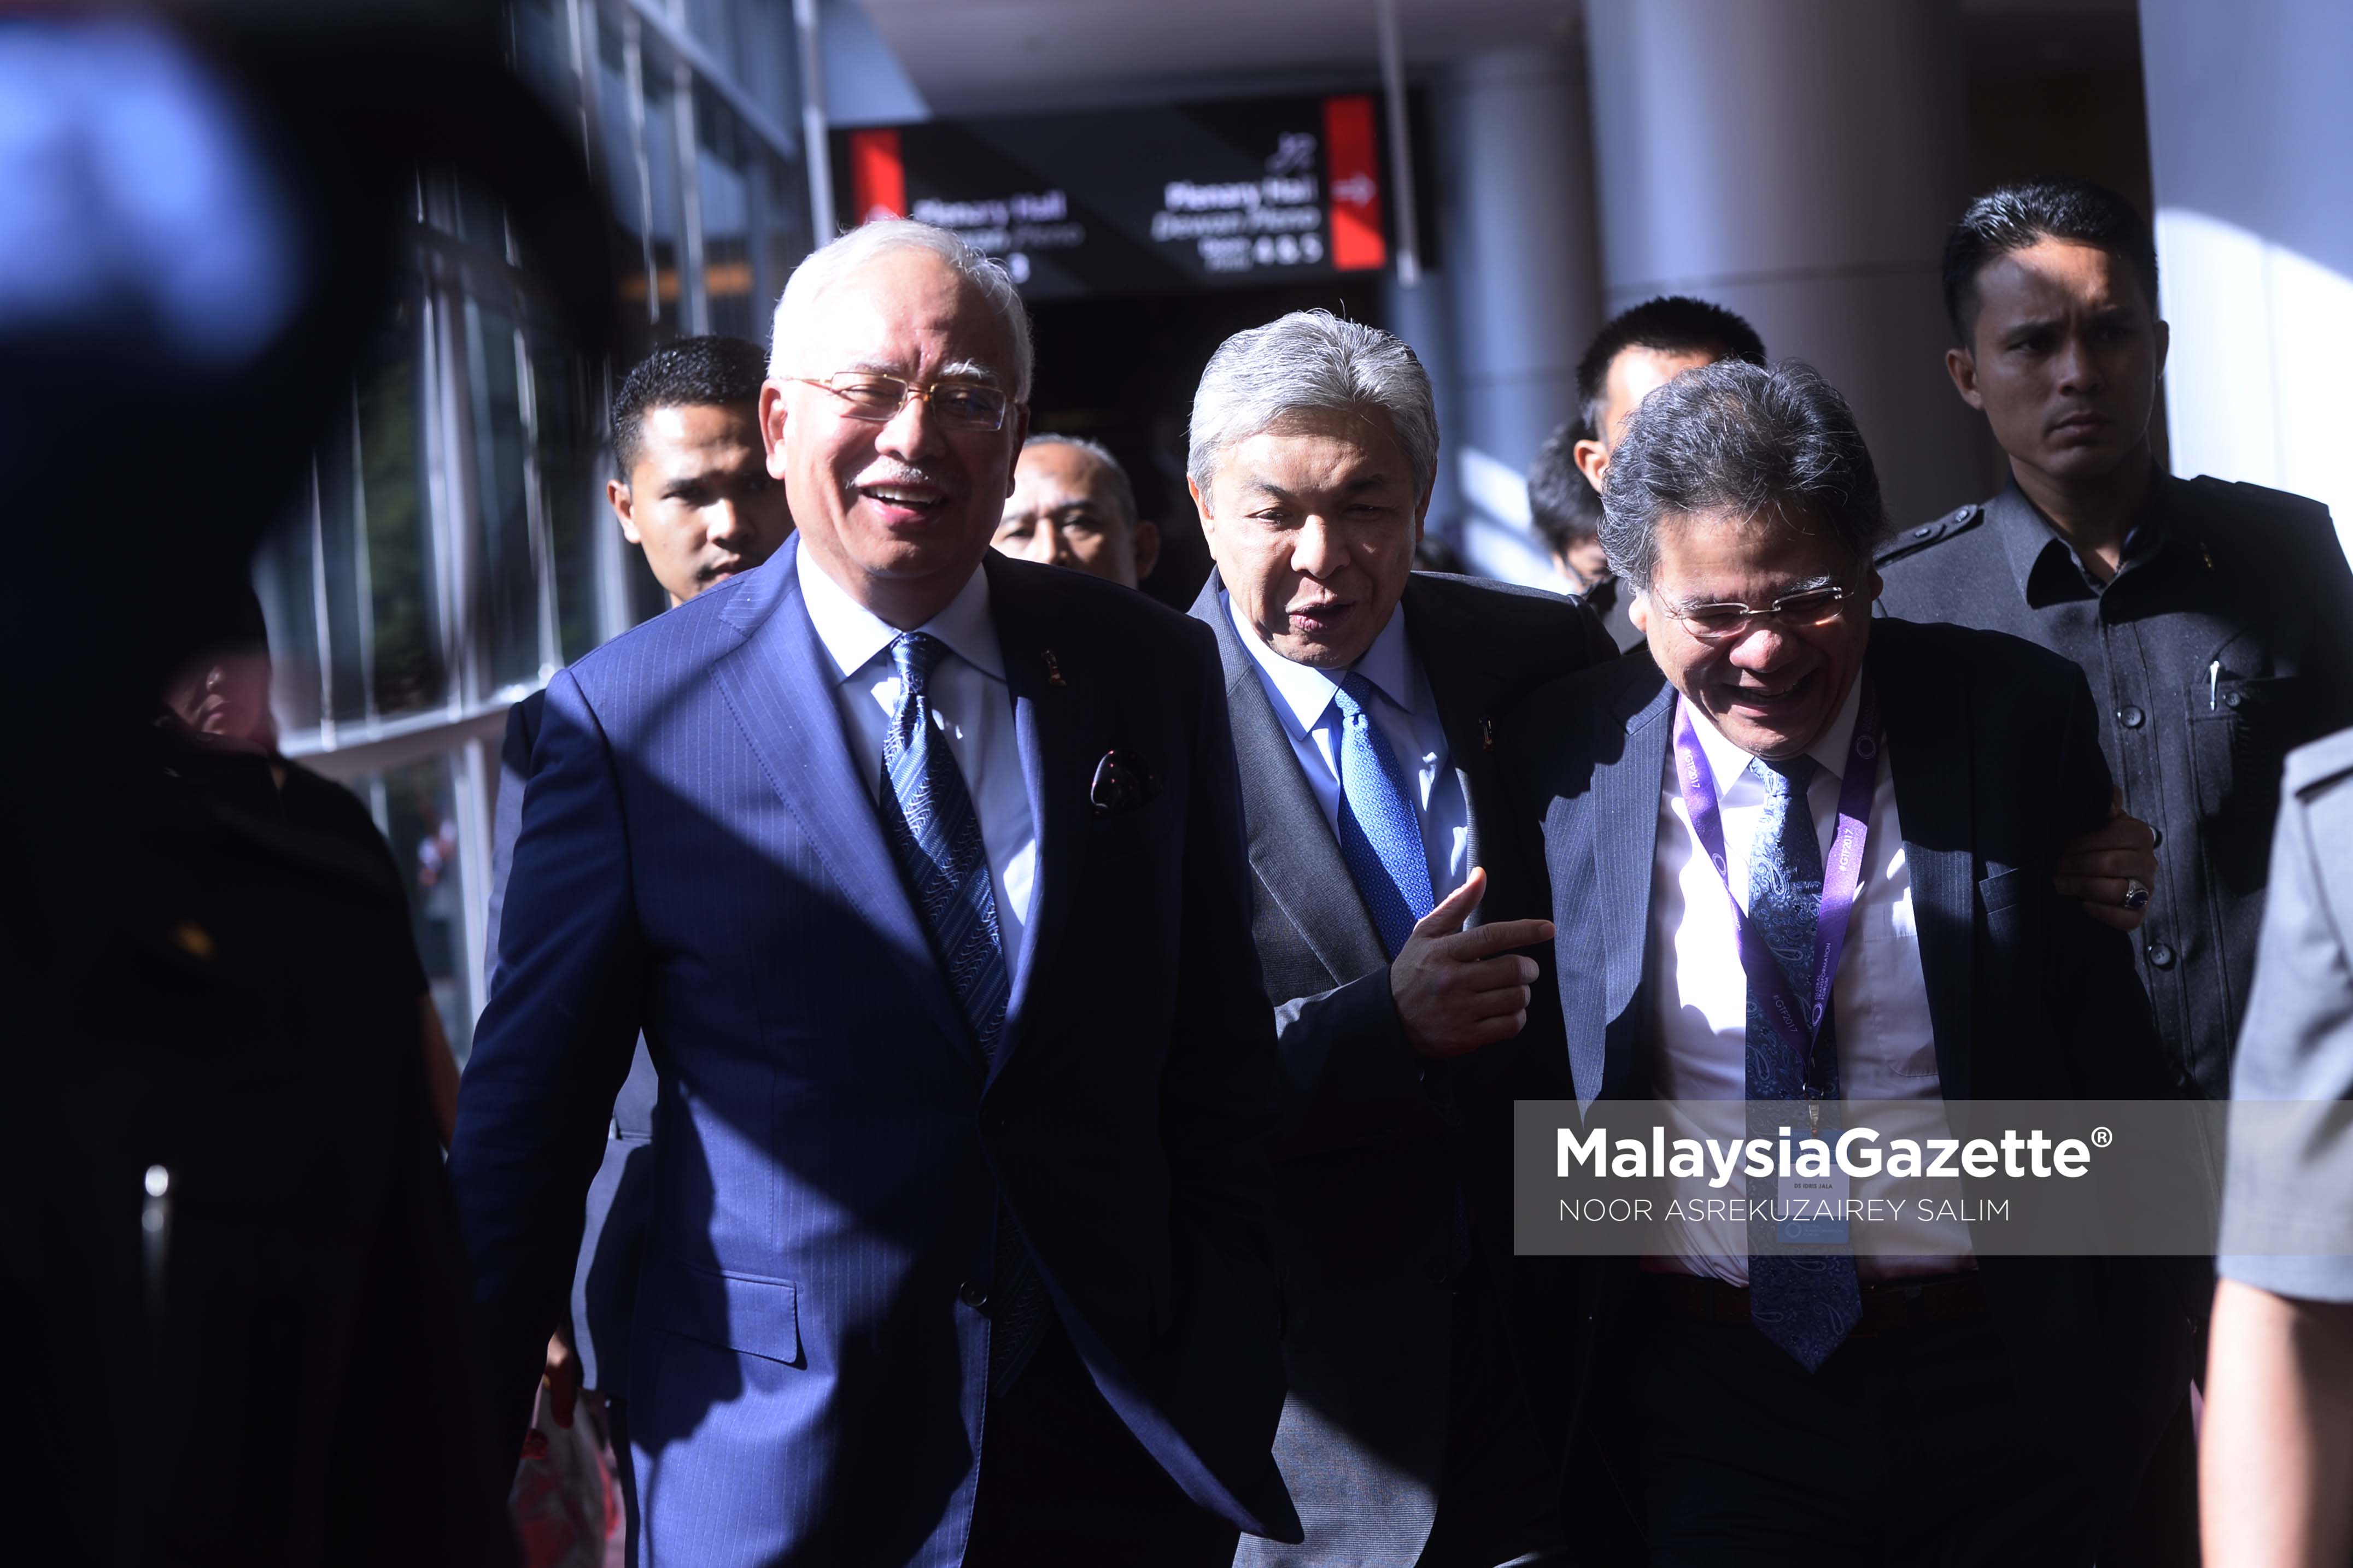 Reaksi ceria Perdana Menteri, Datuk Seri Najib Tun Razak bersama Timbalan Perdana Menteri, Datuk Seri Ahmad Zahid Hamidi (tengah) dan Ketua Pegawai Eksekutif PEMANDU, Datuk Seri Idris Jala (kanan) selepas menyampaikan ucaptama pada Forum Transfomasi Global 2017 di Pusat Konvensyen Kuala Lumpur (KLCC), Kuala Lumpur. foto NOOR ASREKUZAIREY SALIM, 22 MAC 2017